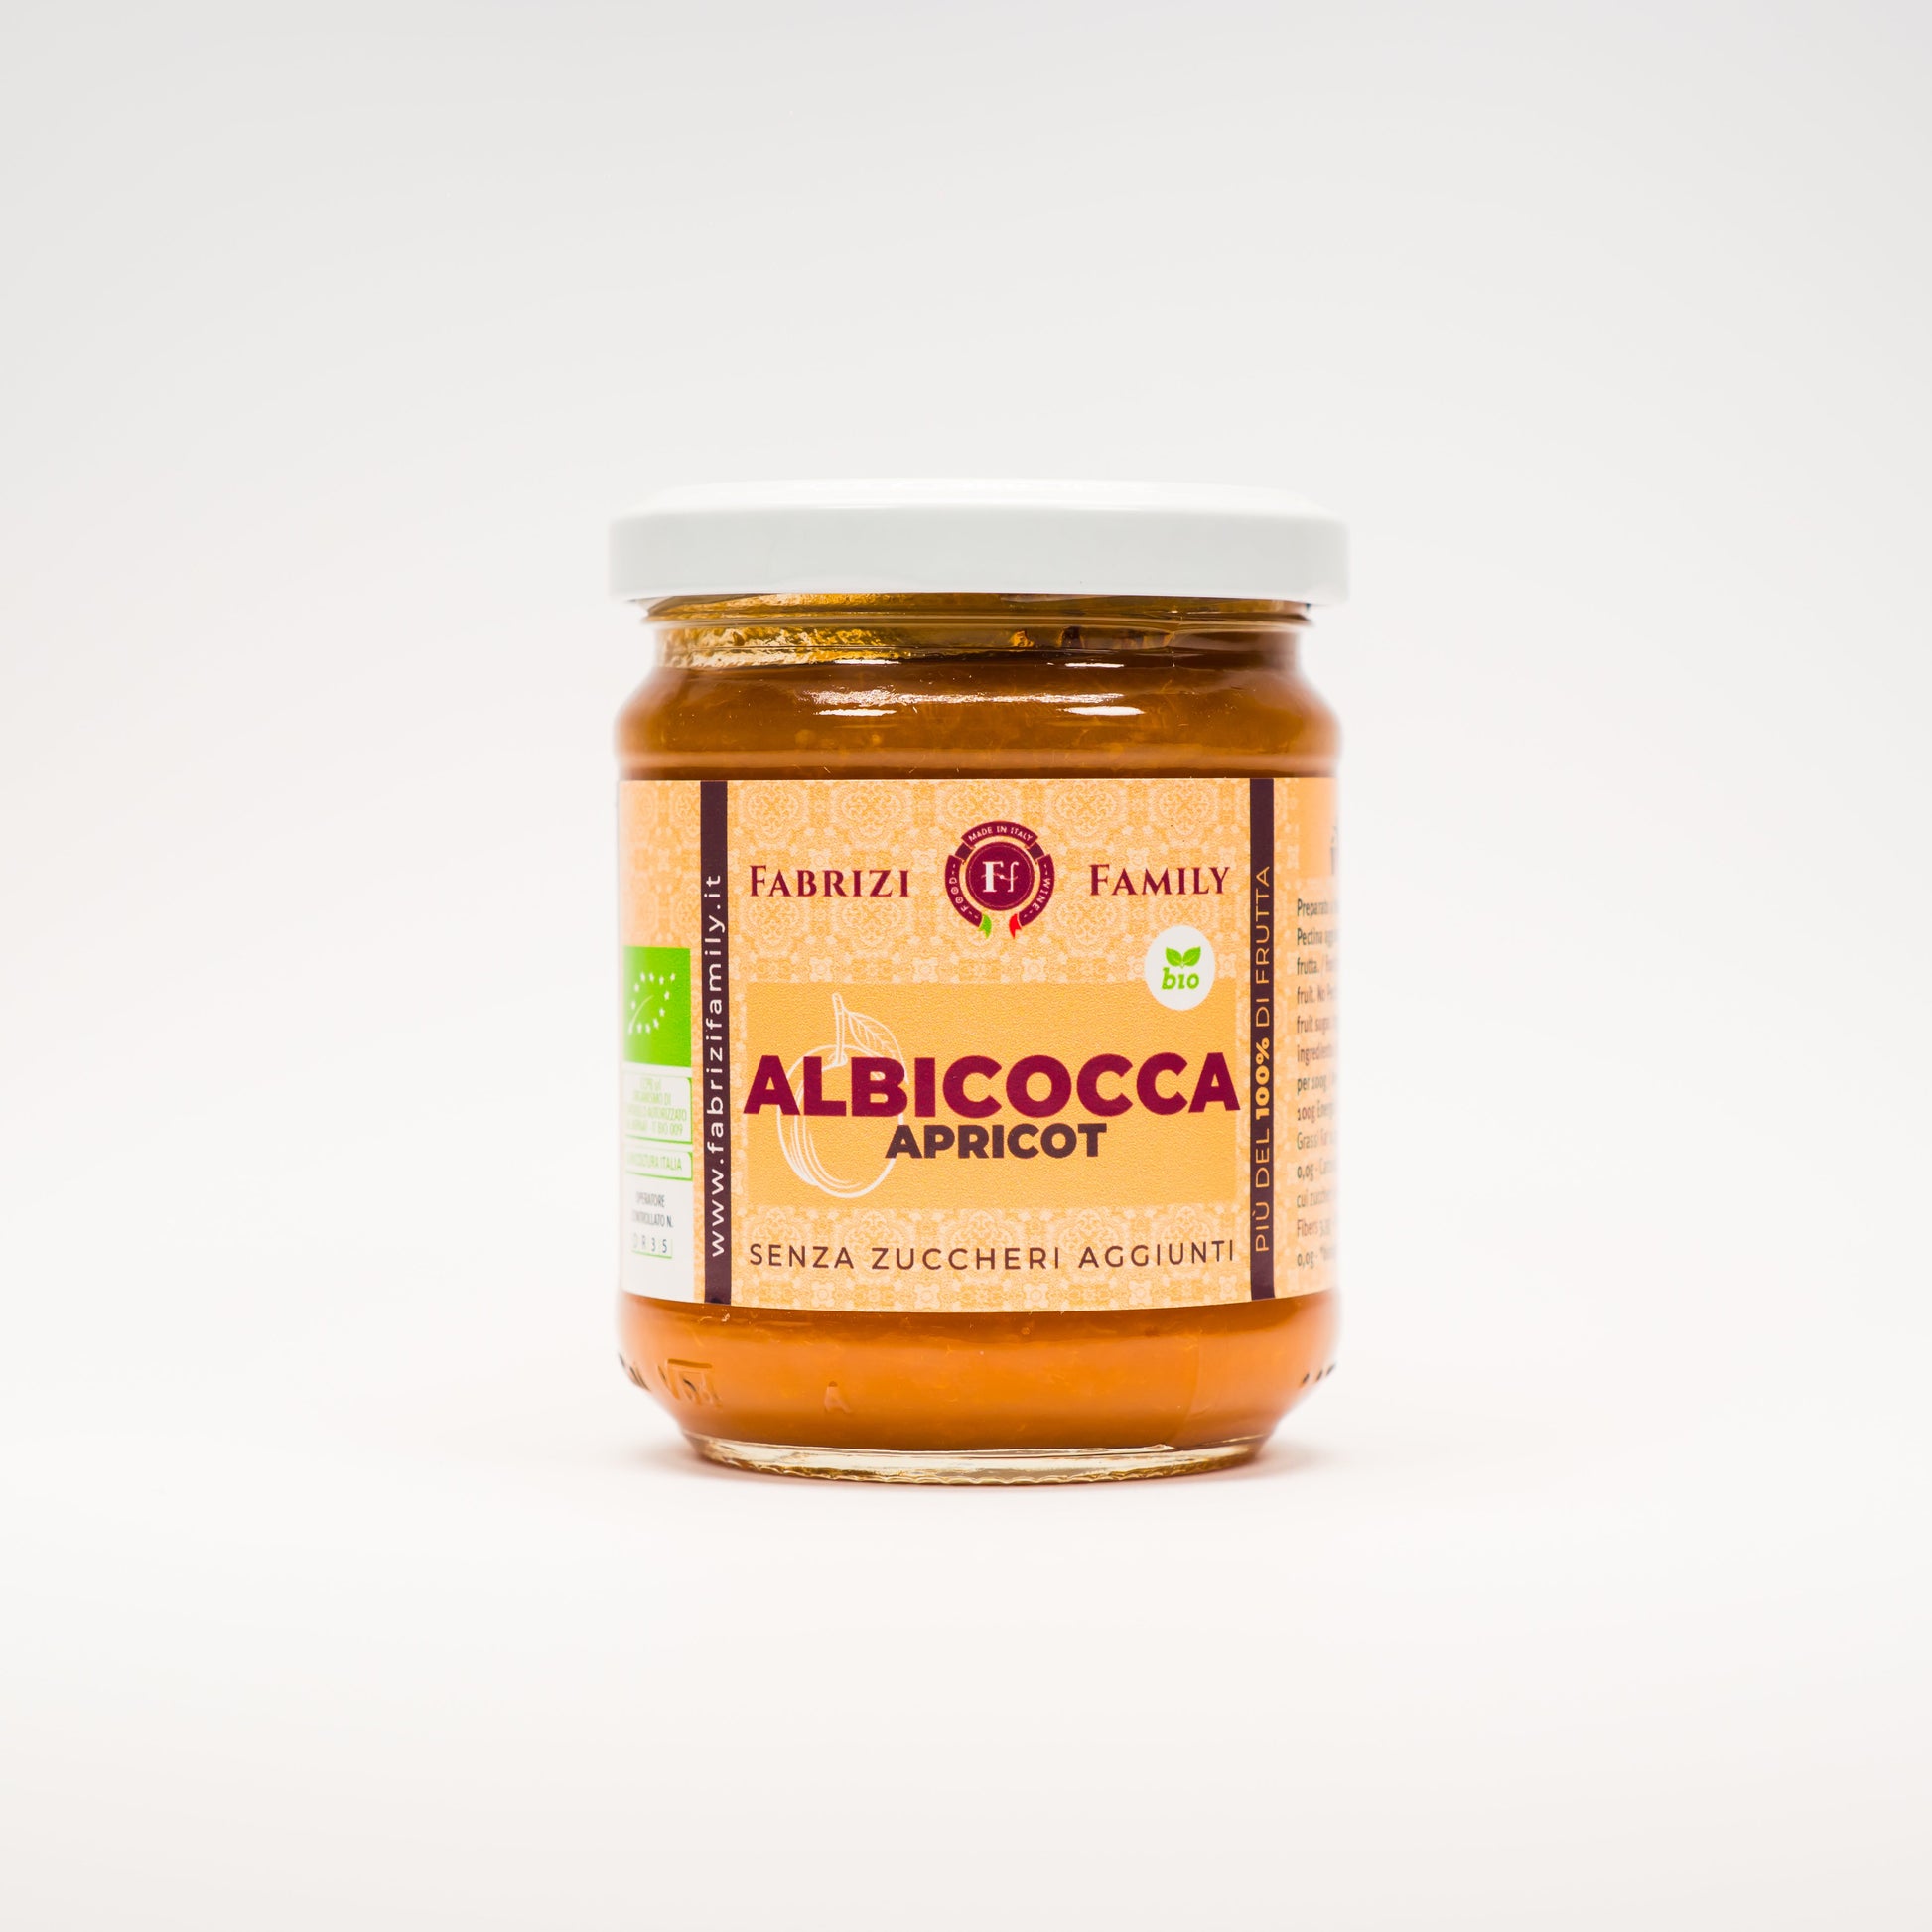 Albicocca Senza Zucchero Aggiunto BIOLOGICA - FABRIZI FAMILY - I migliori prodotti Made in Italy da Fiera di Monza Shop - Solo 12€! Acquista subito su Fiera di Monza Shop!